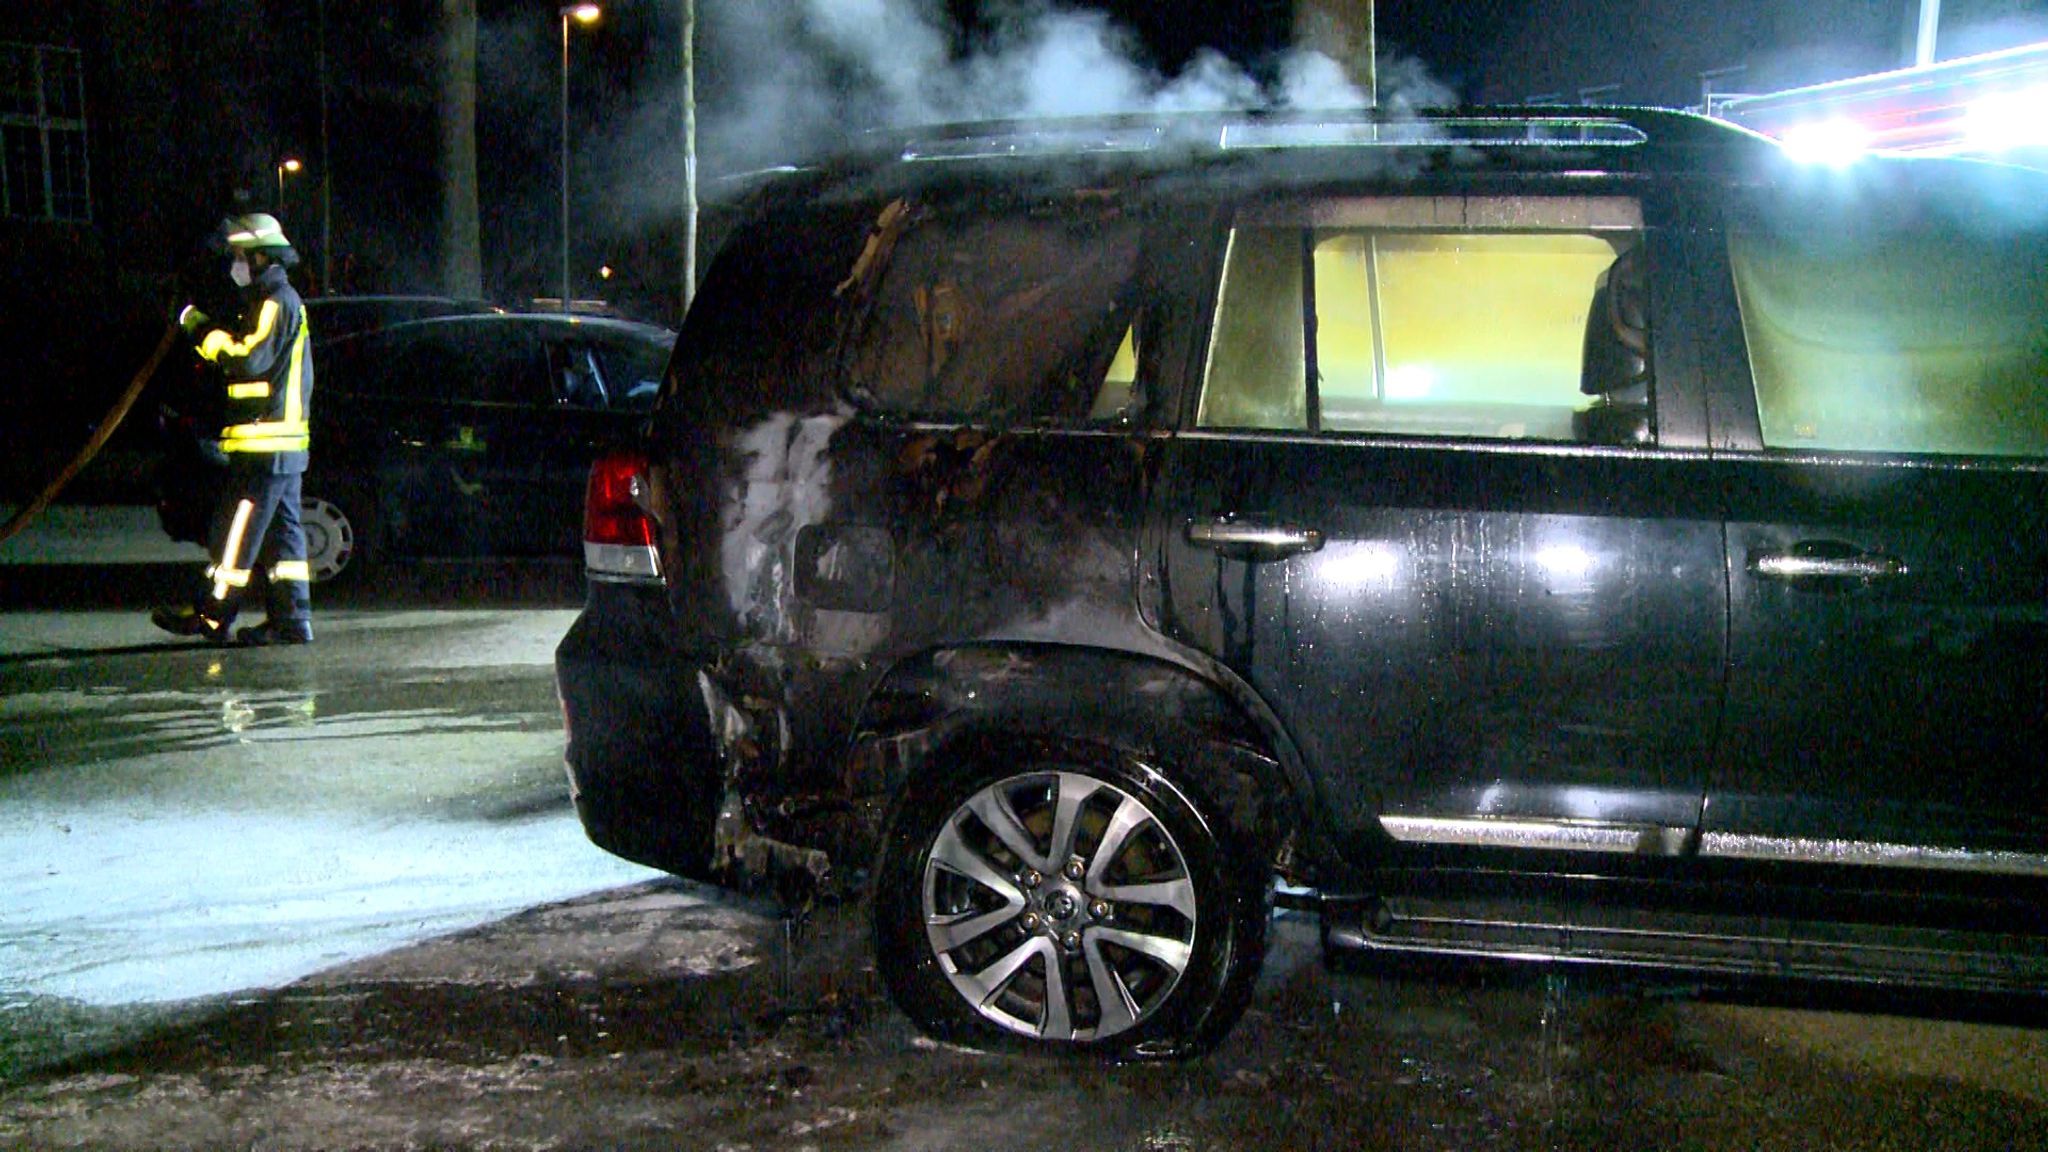 In Krefeld ist Anfang März ein Auto mit einem ukrainischen Kennzeichen in Brand geraten. Die Polizei ermittelt. Foto: dpa/Forstreut